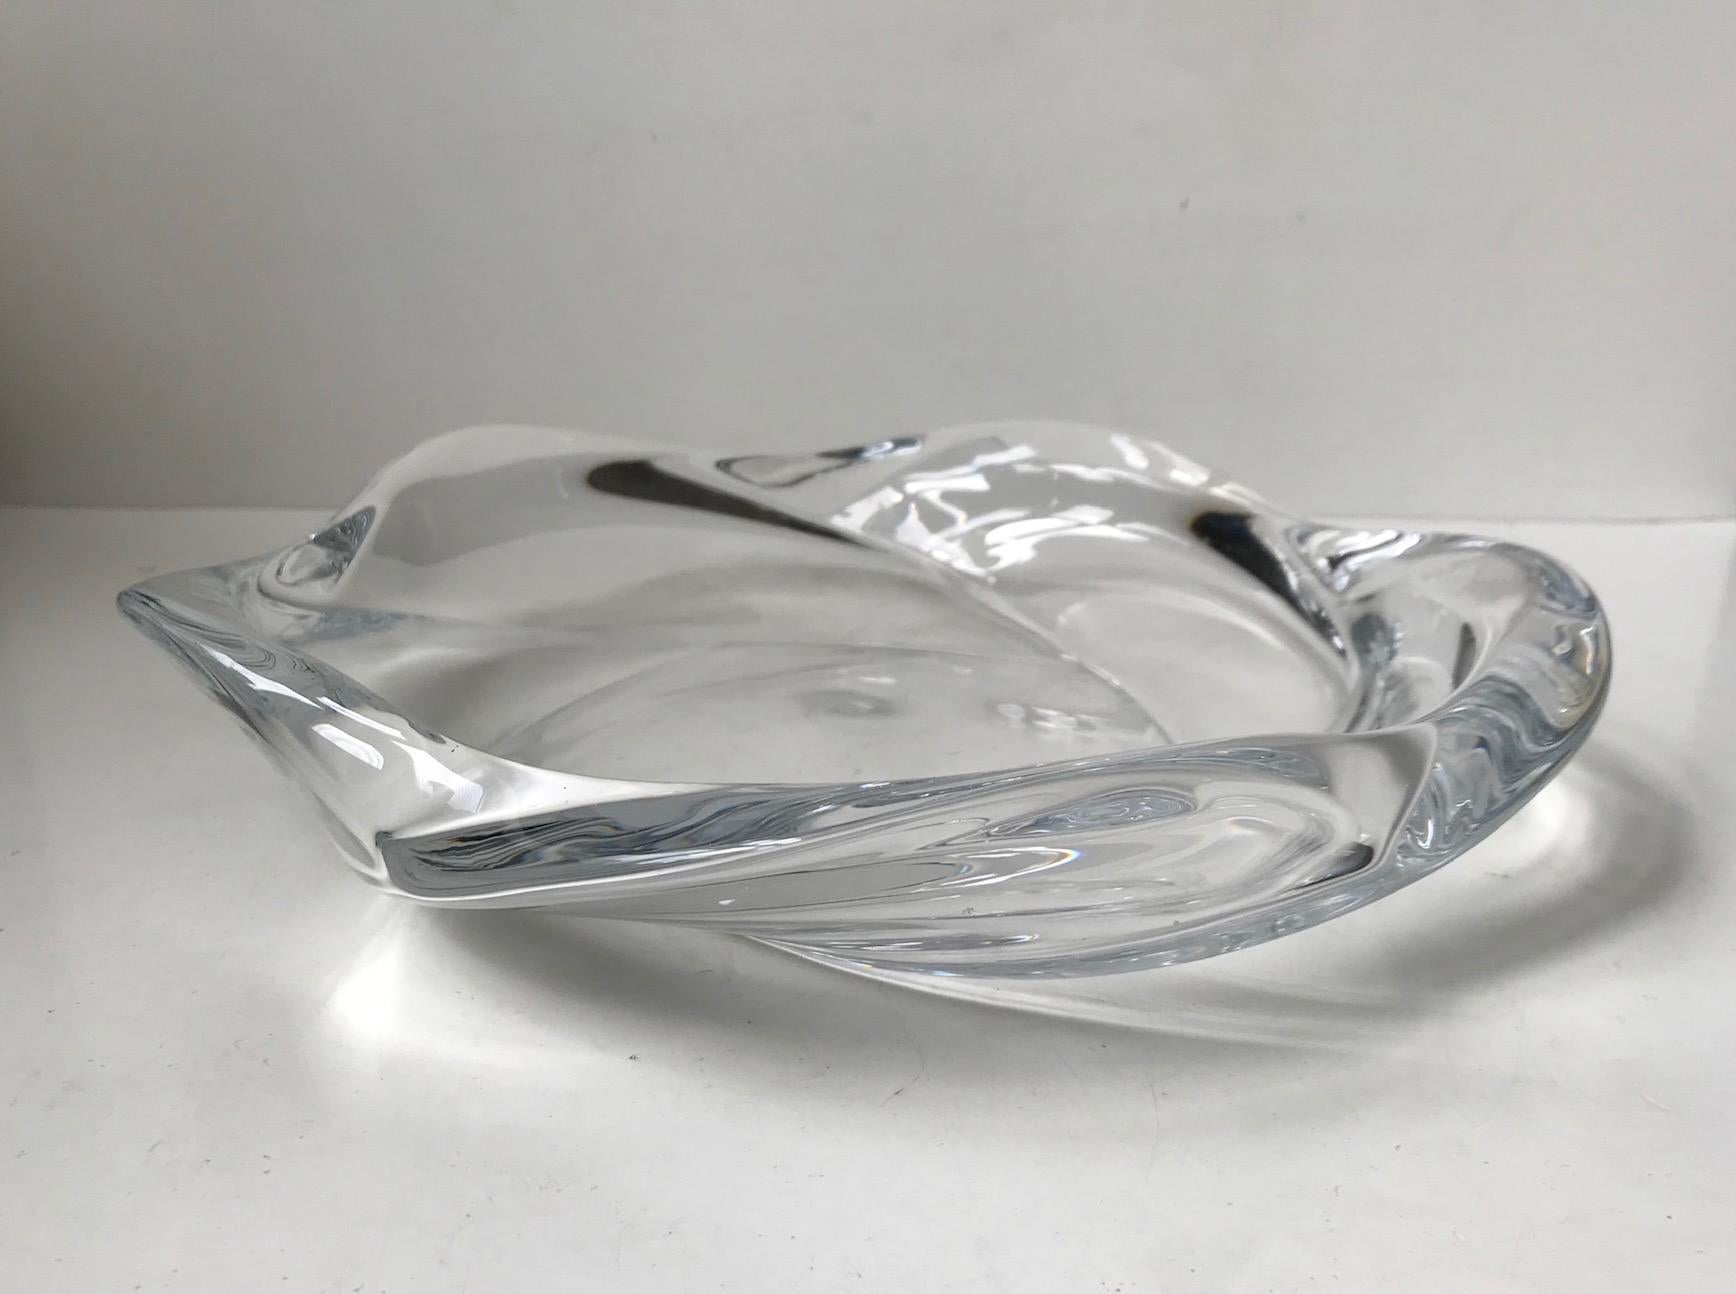 Modern Sculptural Crystal Dish by Allan Scharff for Royal Copenhagen